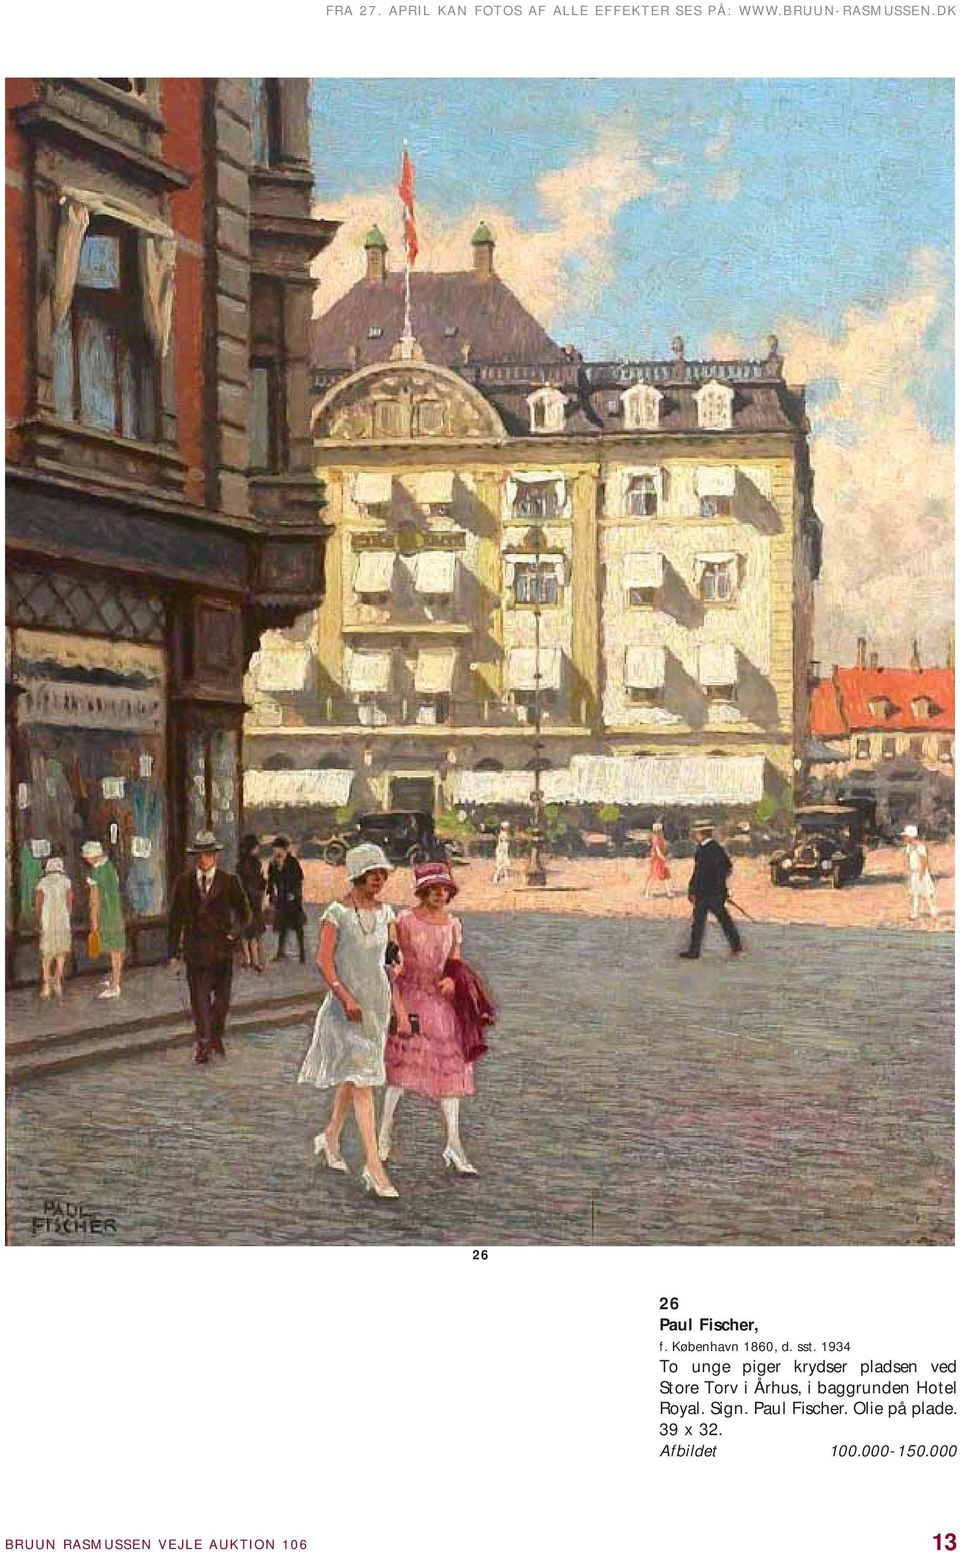 1934 To unge piger krydser pladsen ved Store Torv i Århus, i baggrunden Hotel